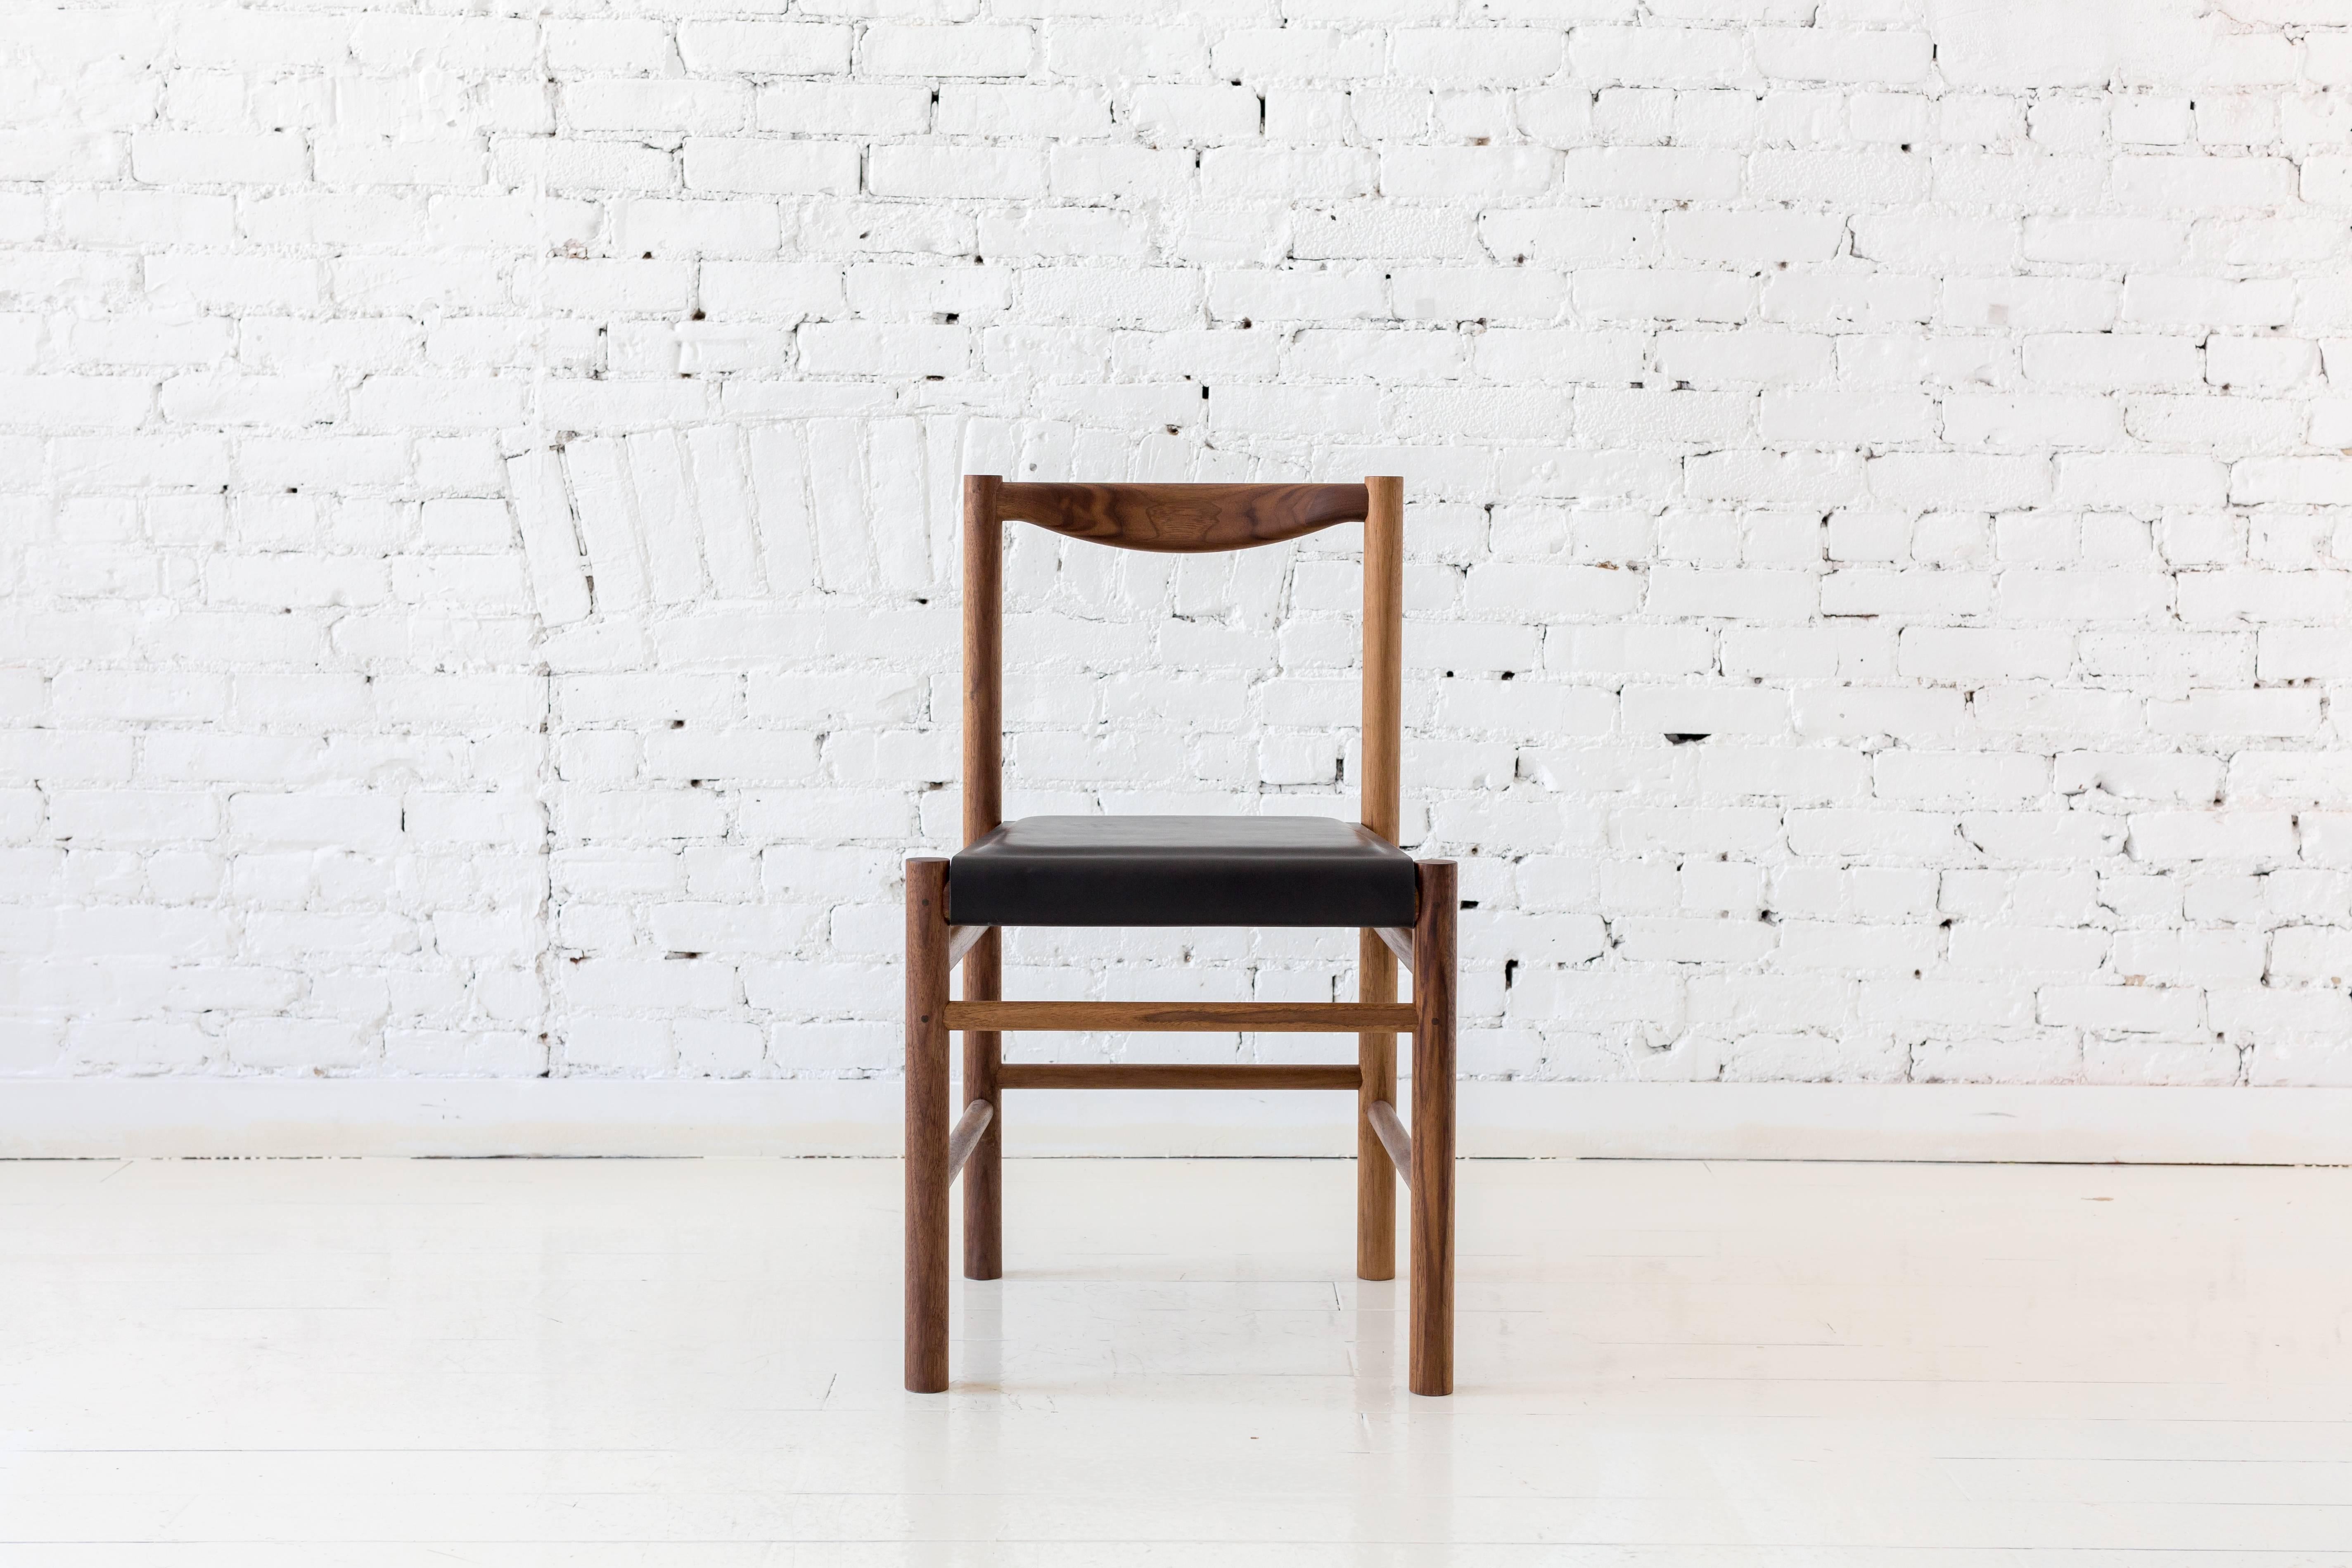 Beistellstuhl aus Walnussholz im Shaker-Stil mit bequemer, konturierter Rückenlehne. Die Schlichtheit dieses Stuhls macht ihn vielseitig einsetzbar, so dass er in vielen verschiedenen Umgebungen gut funktioniert.

Auch verfügbar:
- Stuhl aus hartem